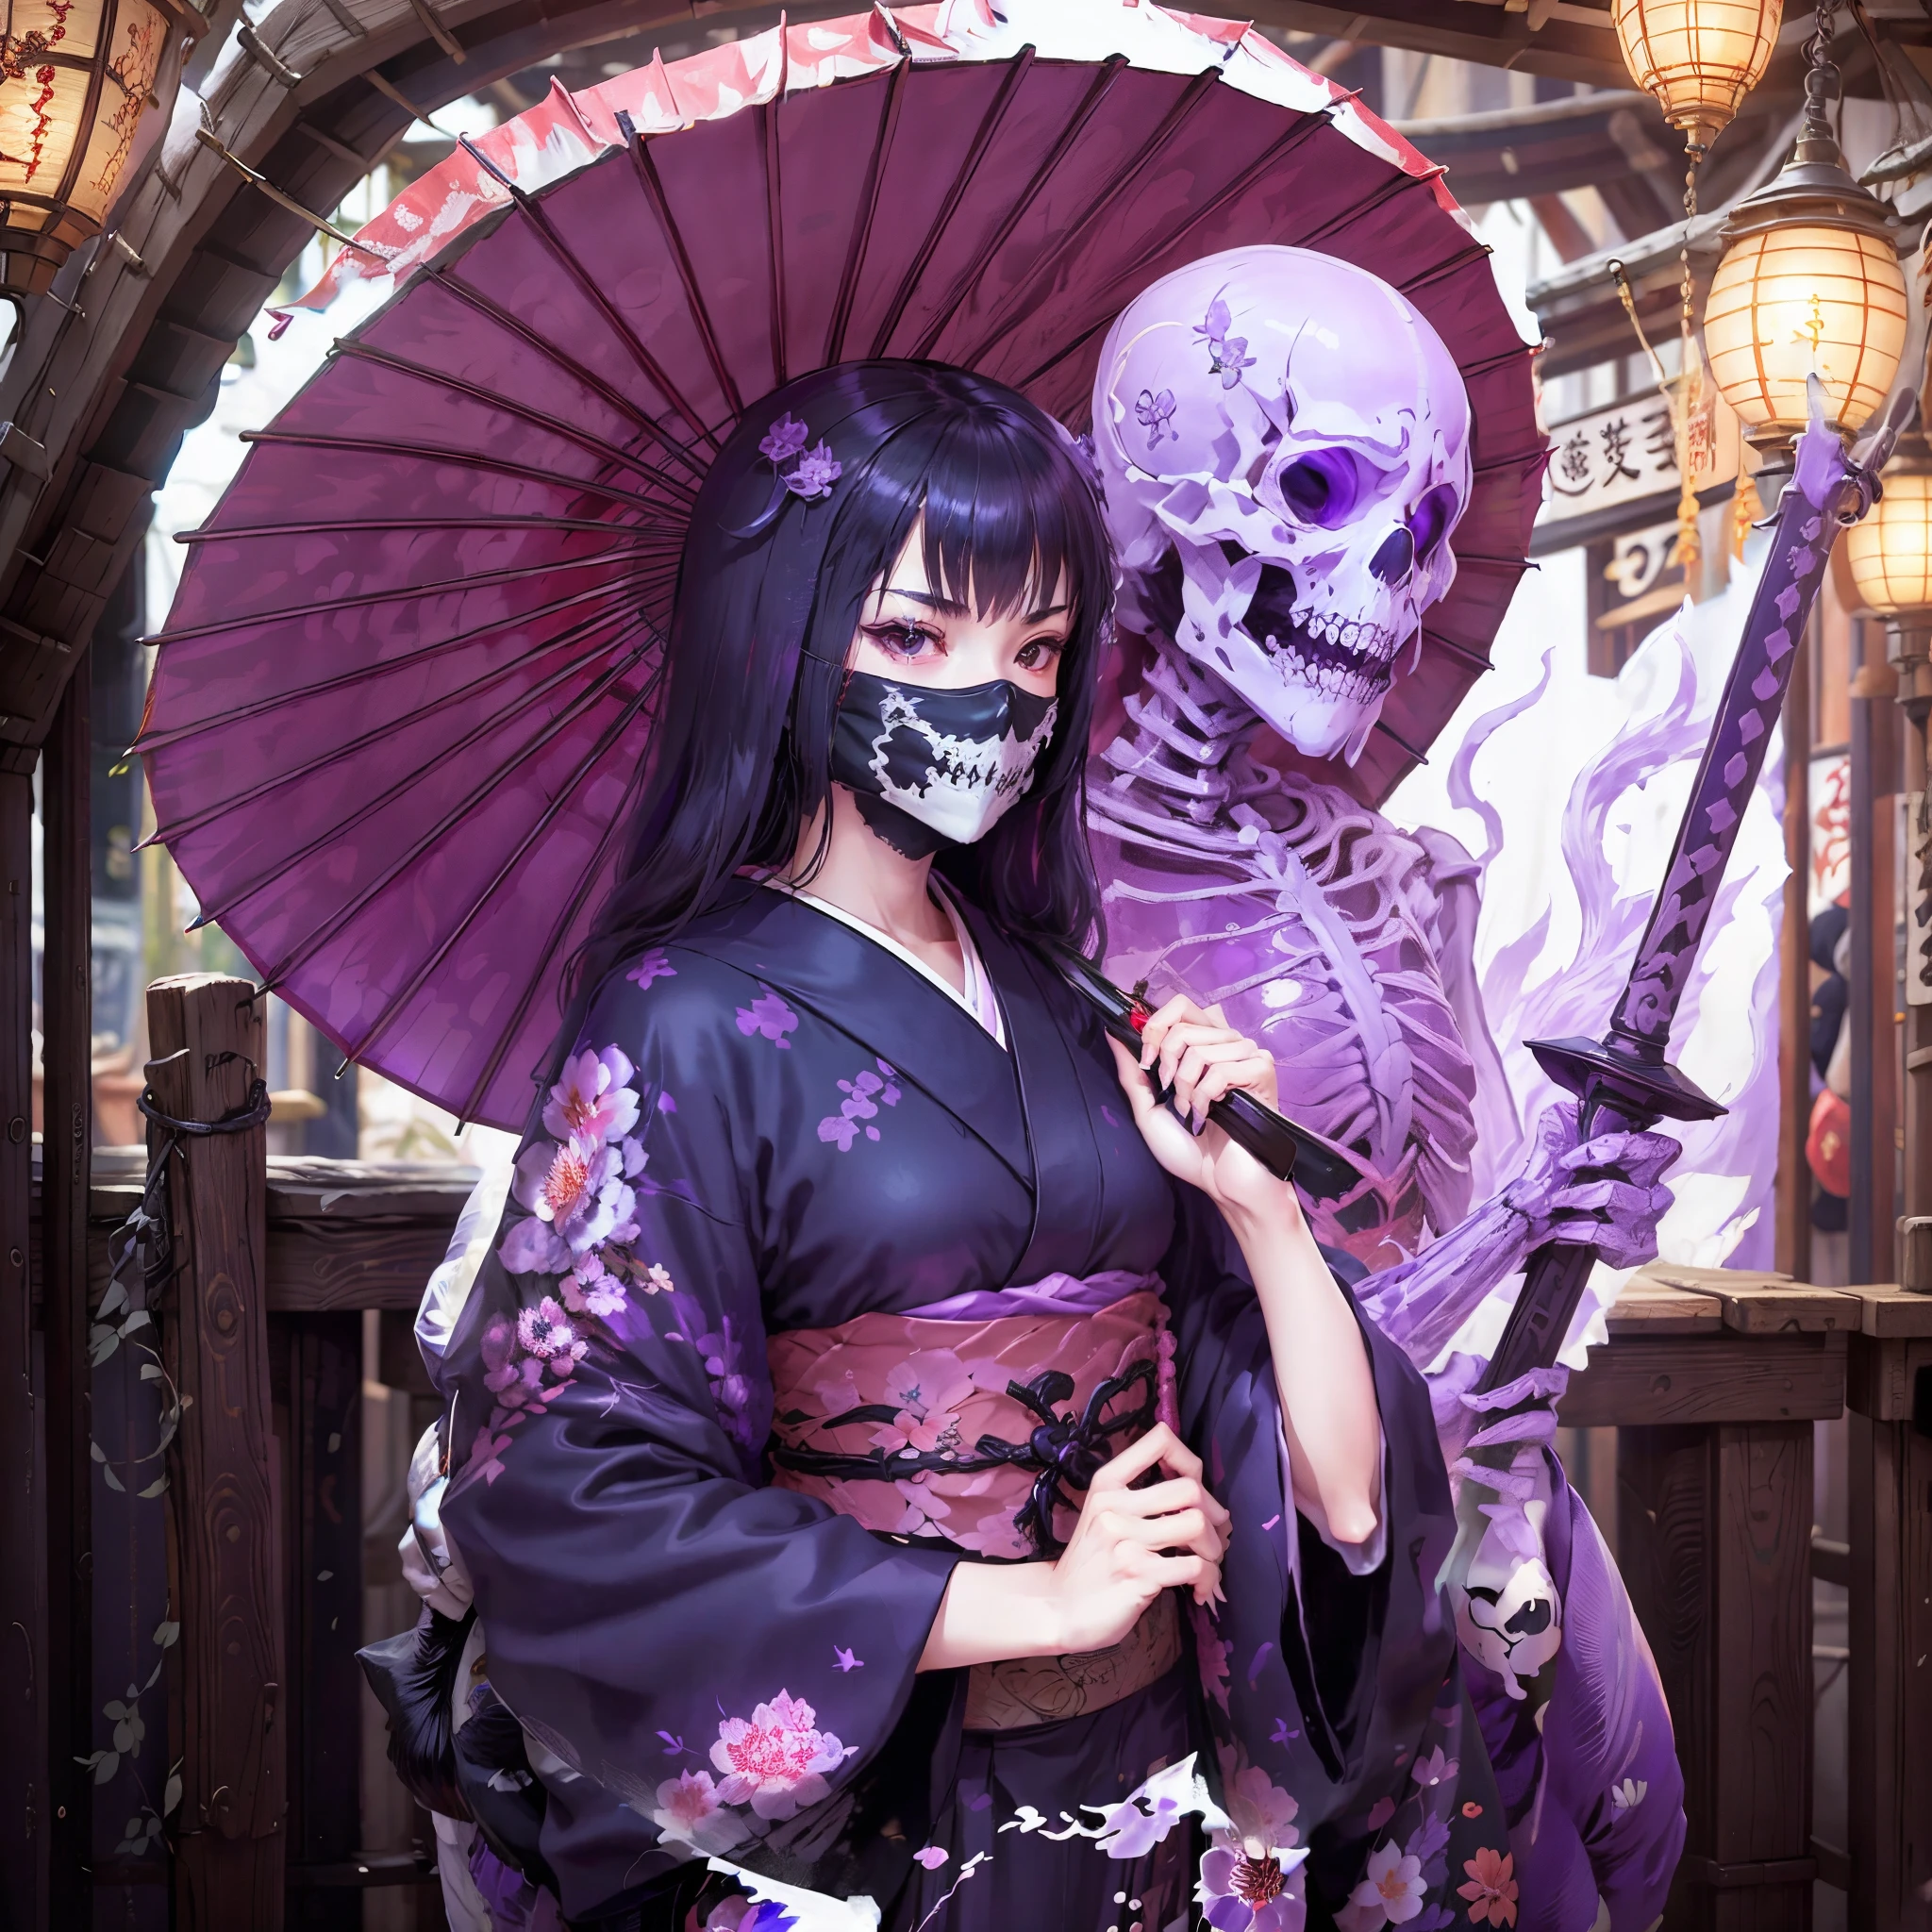 fille en kimono. elle lève son épée. Parapluie japonais. porter des os. Un masque en forme de squelette qui couvre la bouche. Un squelette violet translucide apparaît derrière la jeune fille.. Flamme violette.